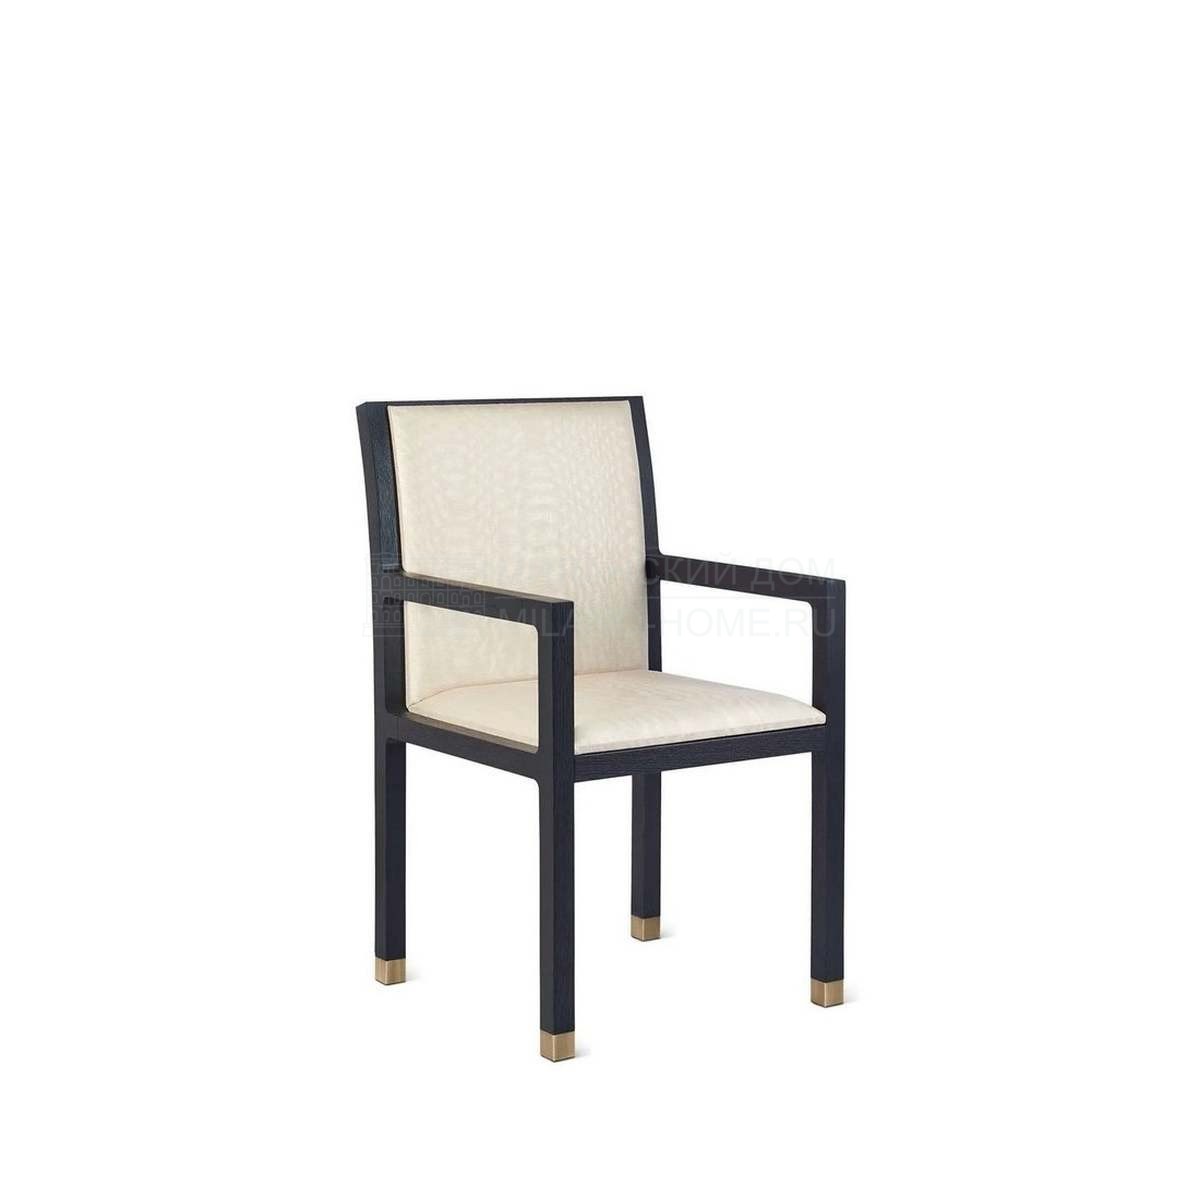 Полукресло Rima chair with armrests из Италии фабрики ARMANI CASA